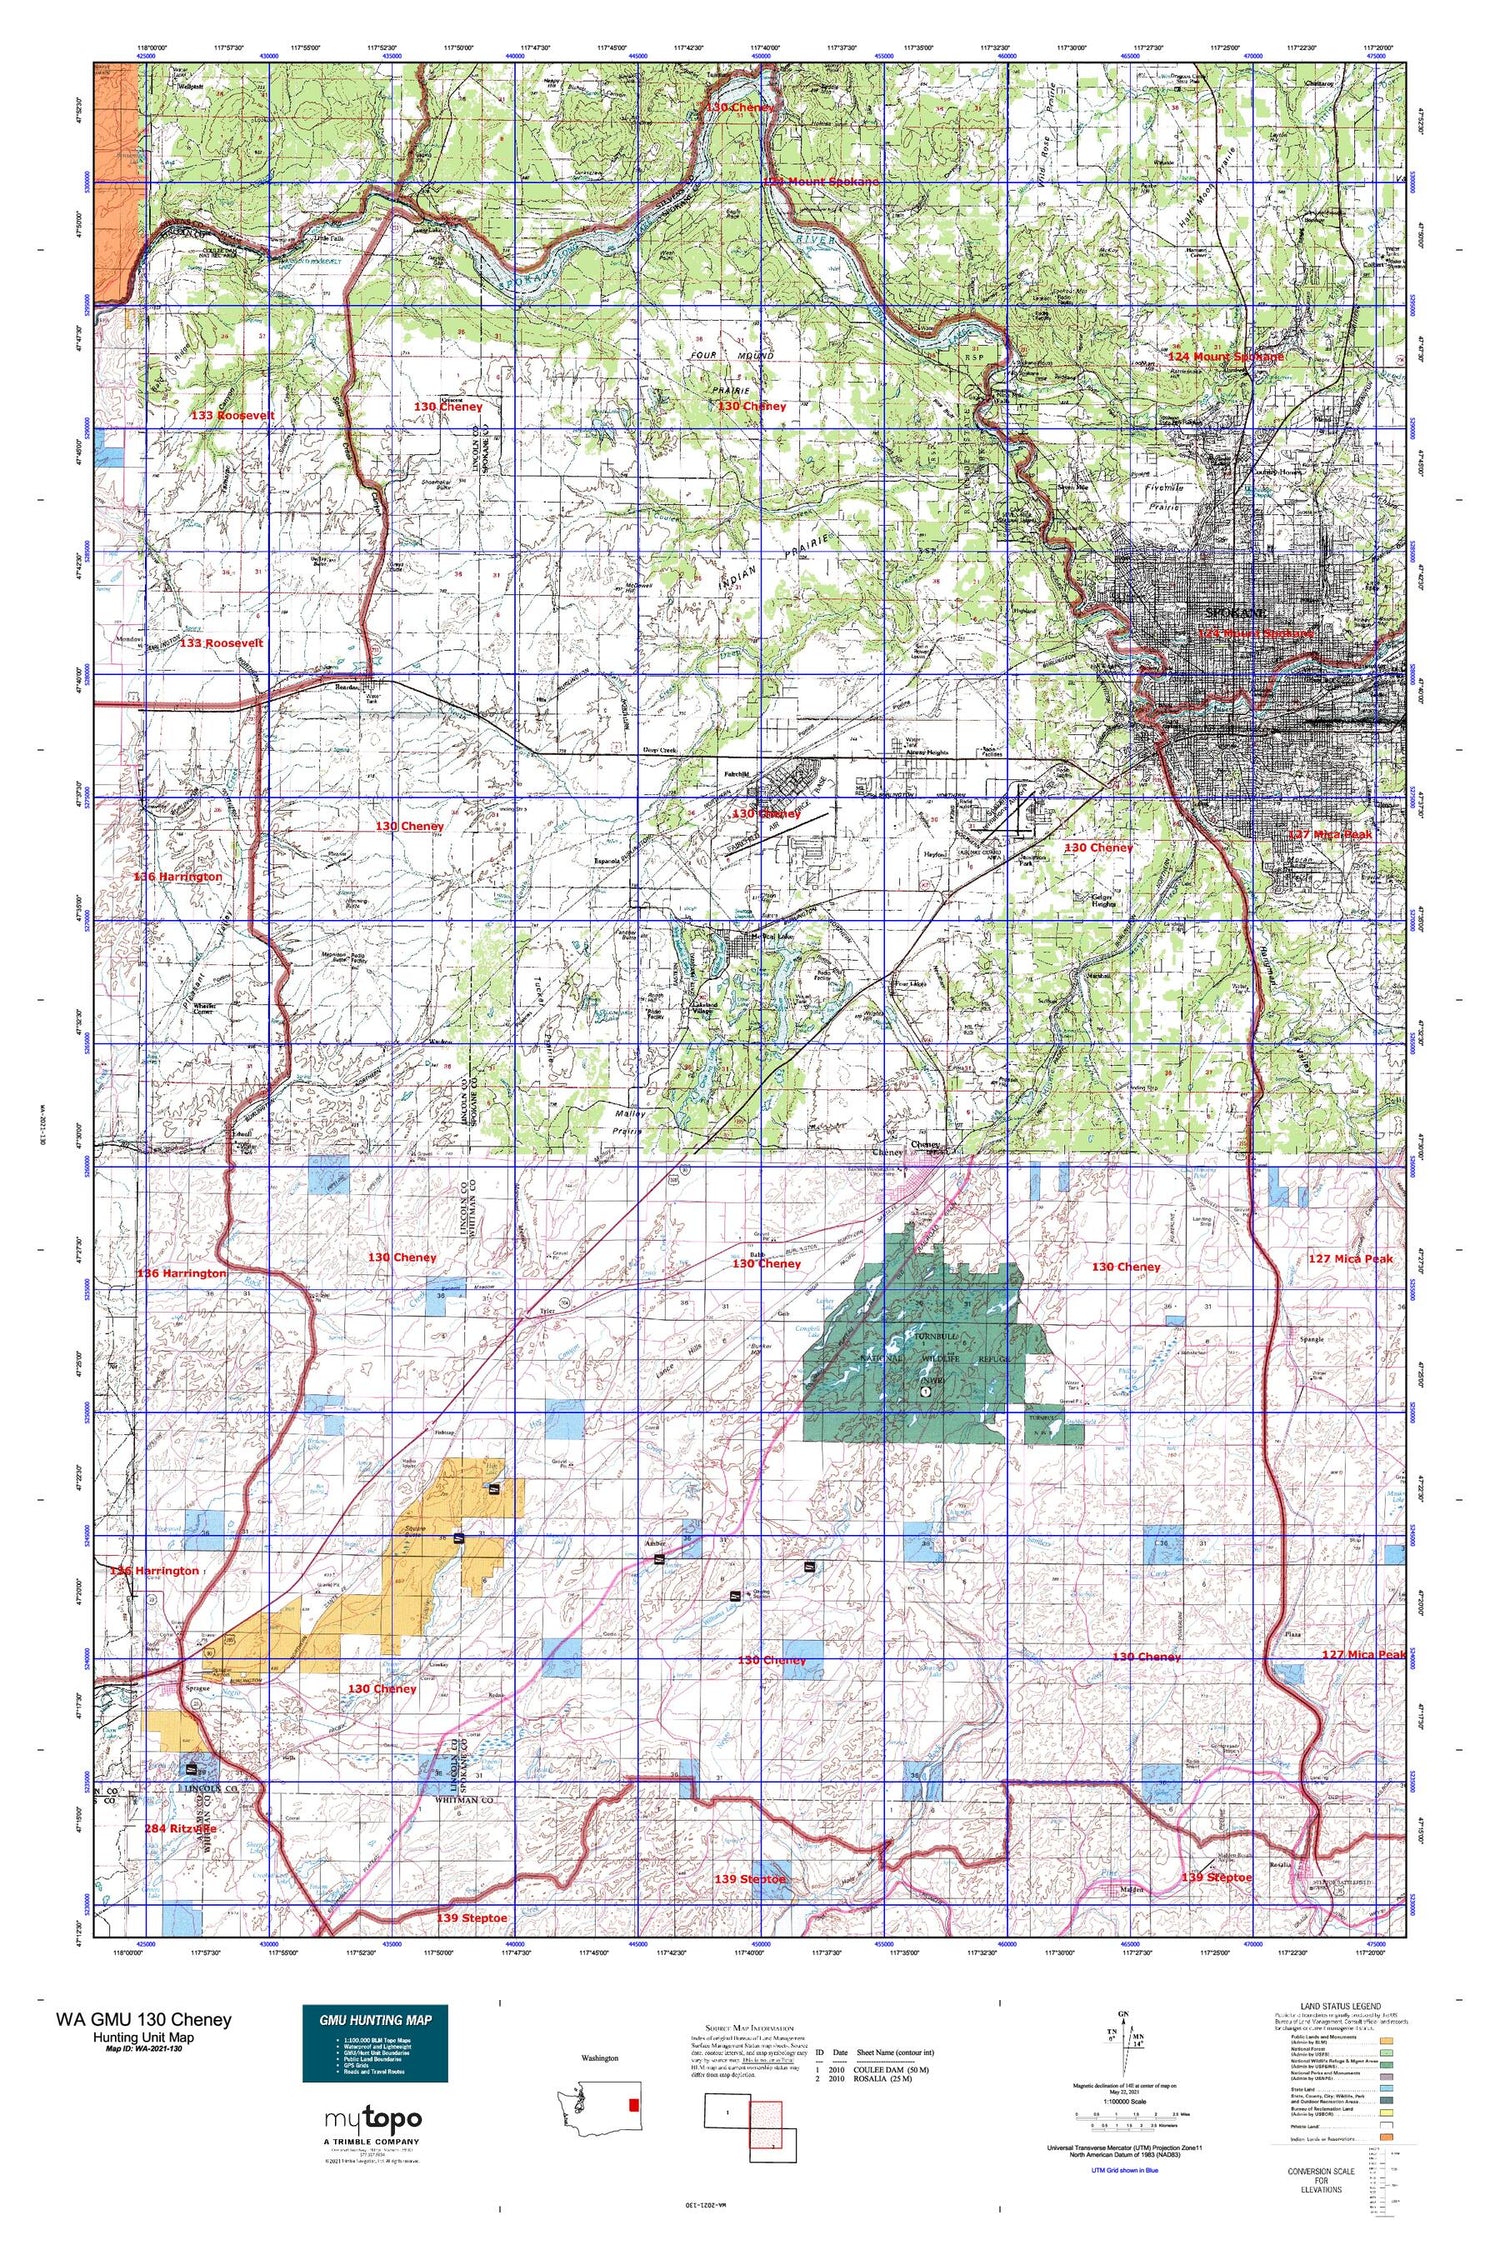 Washington GMU 130 Cheney Map Image